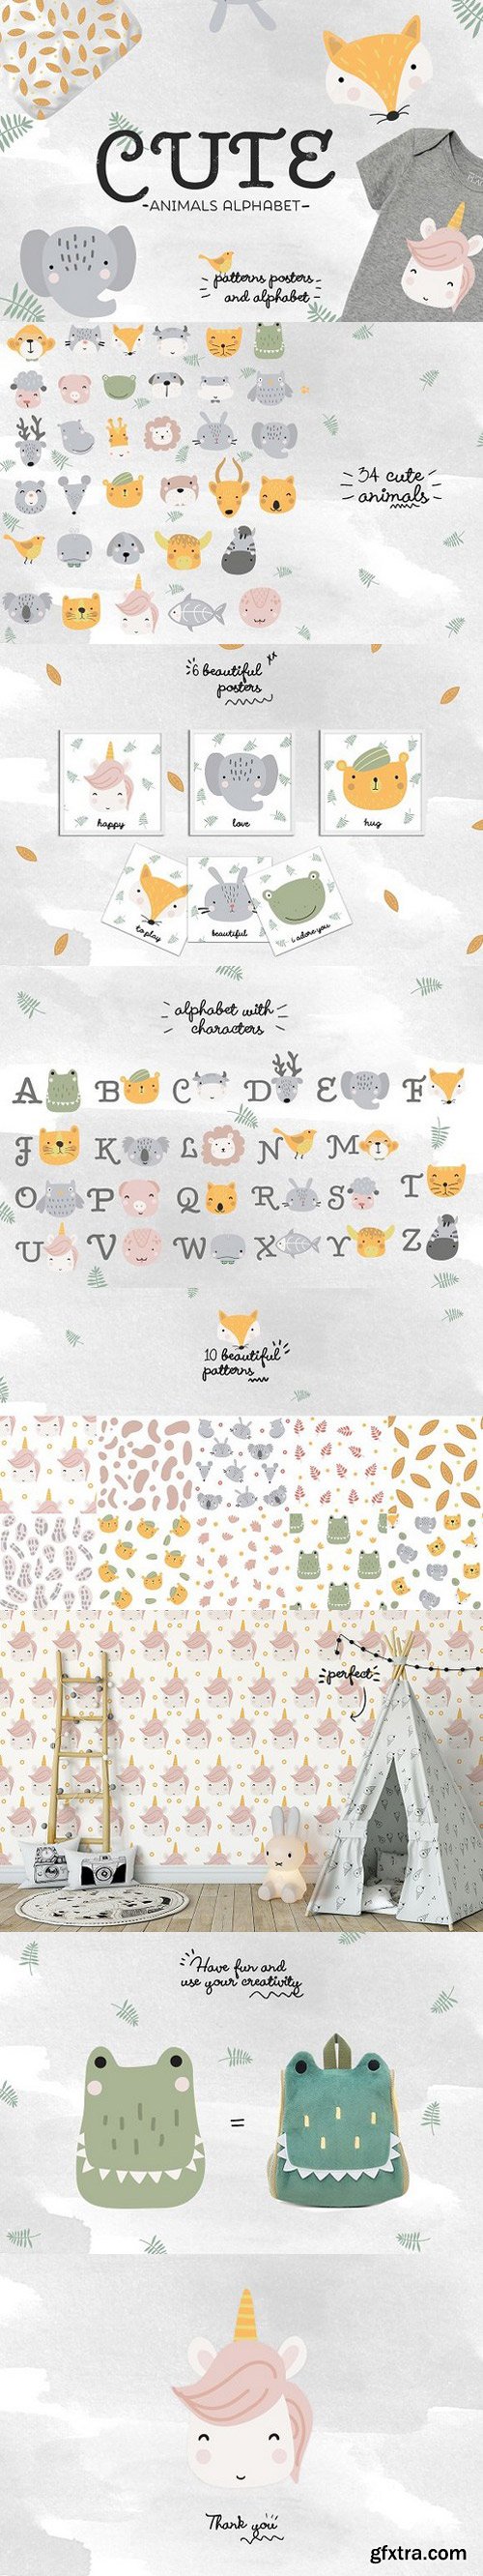 CM - Cute animals alphabet 1618287